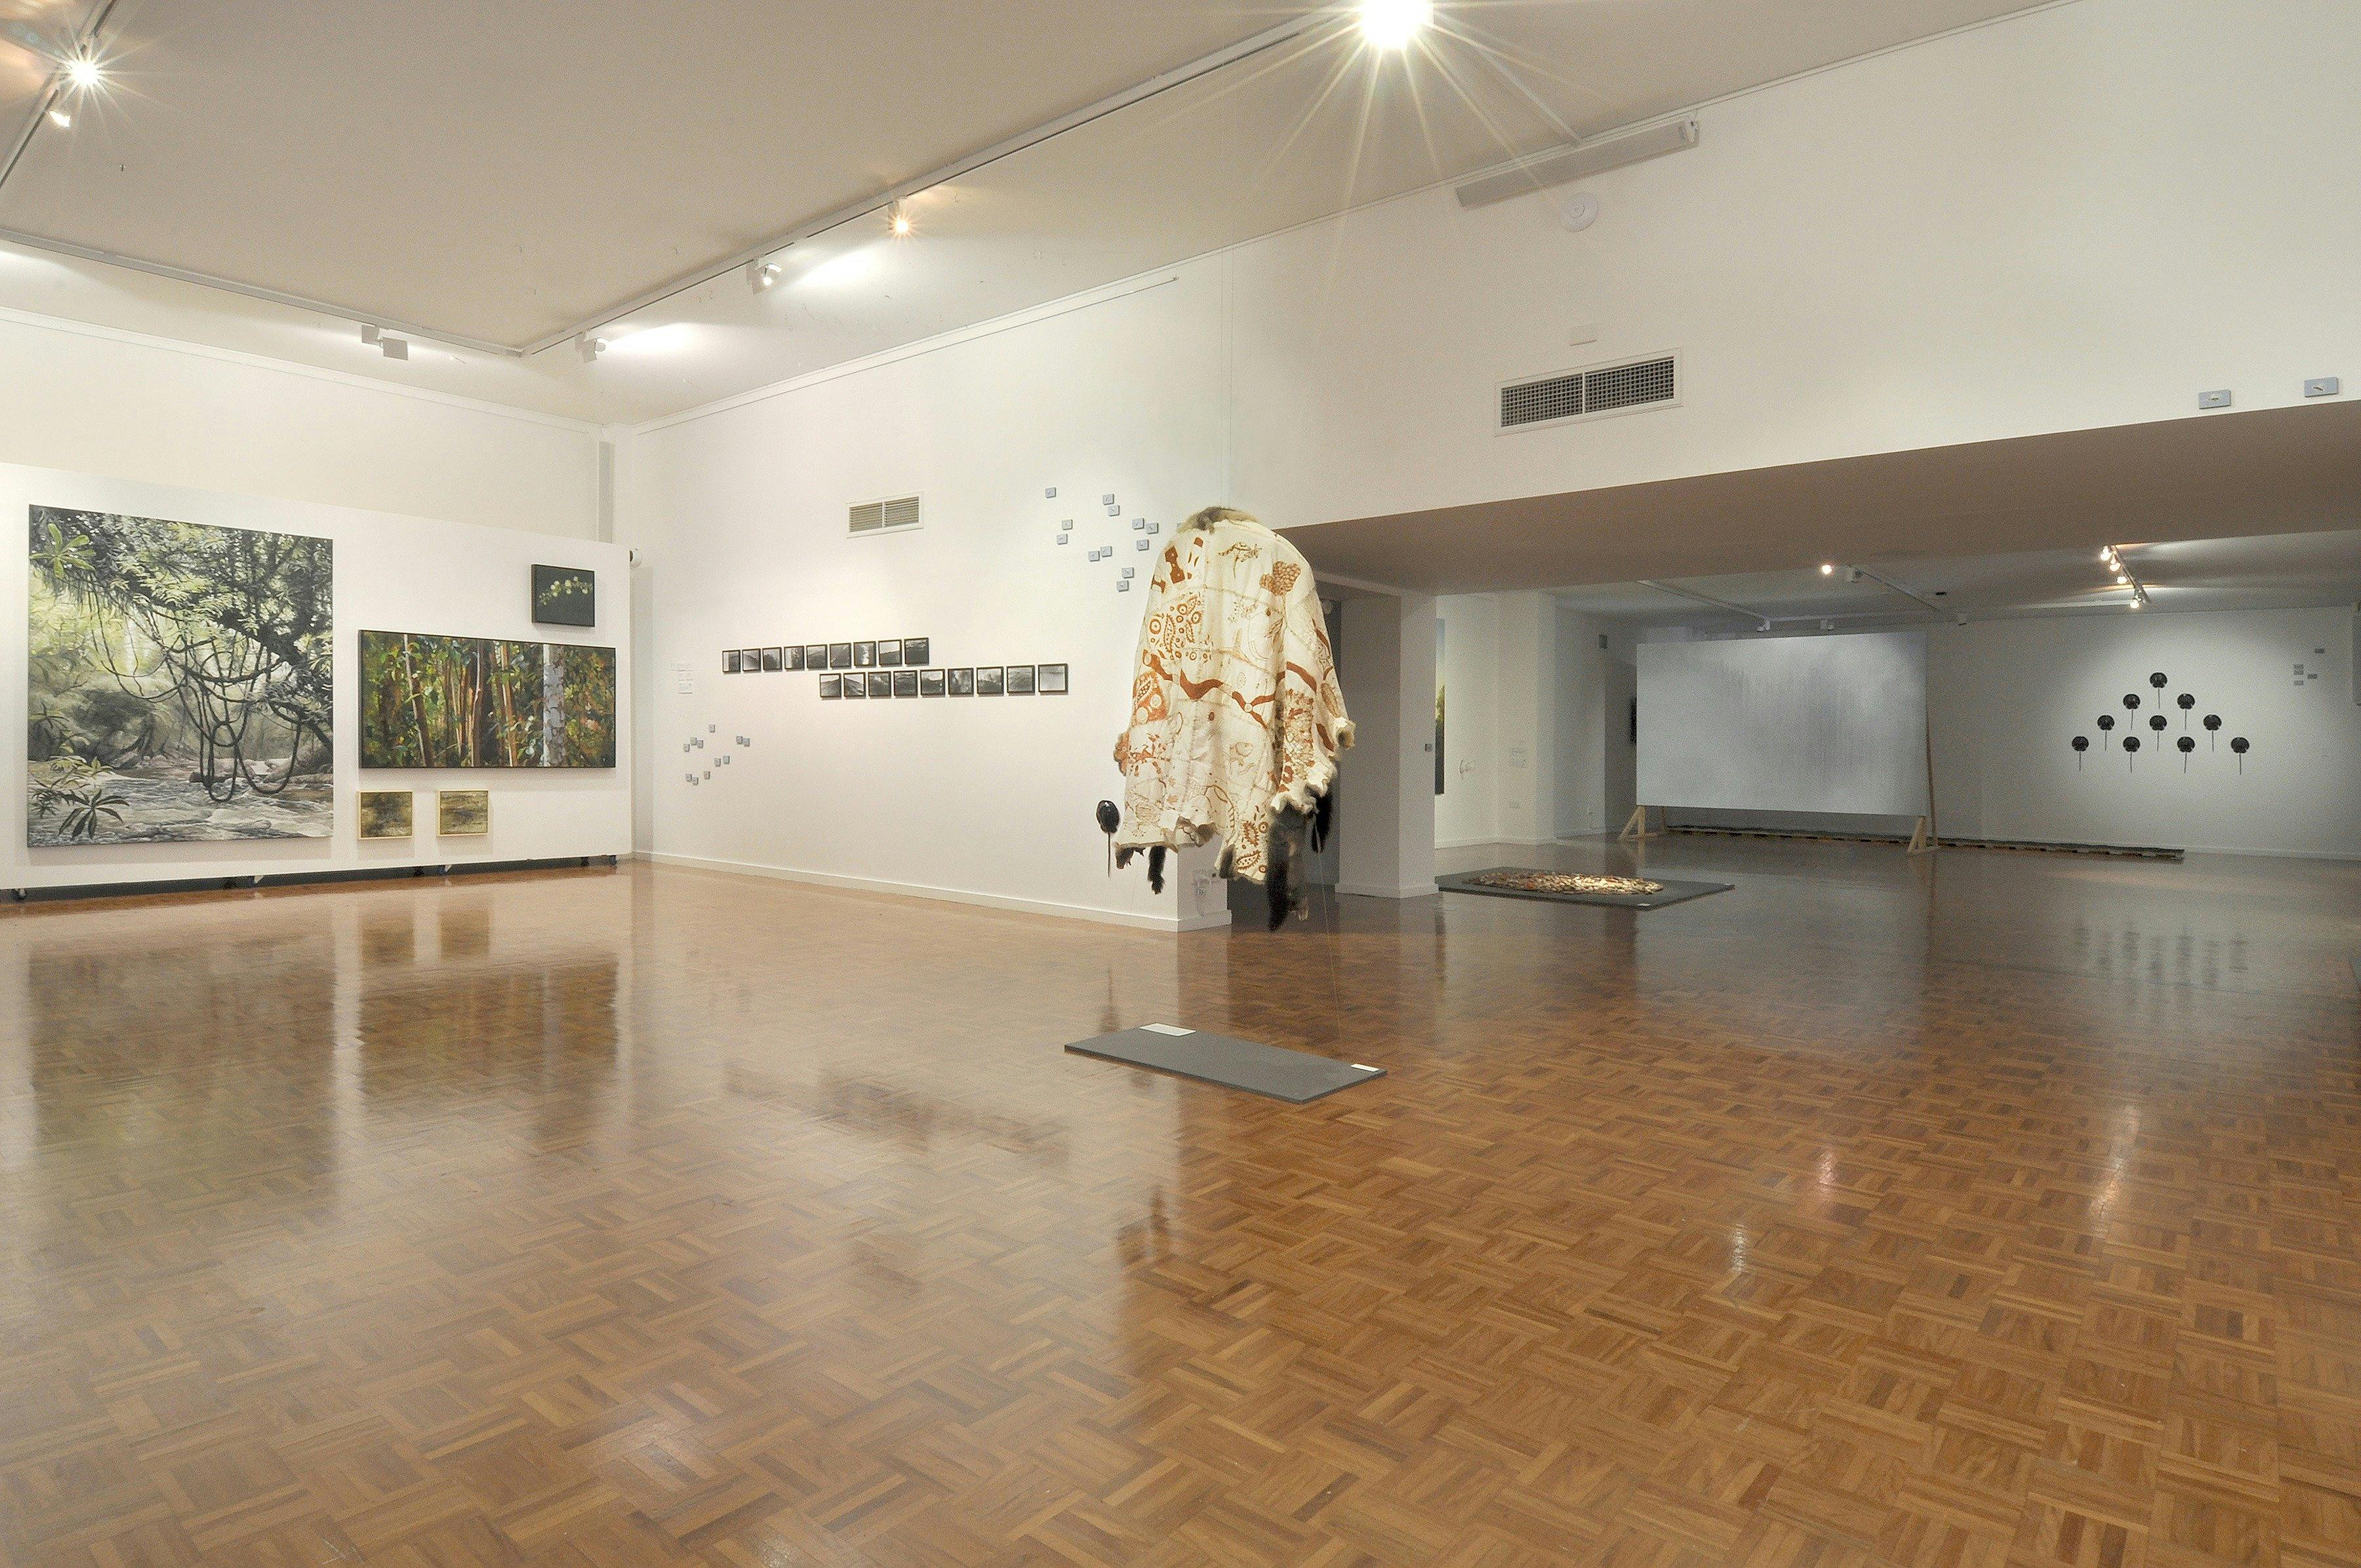 Noosa Regional Gallery